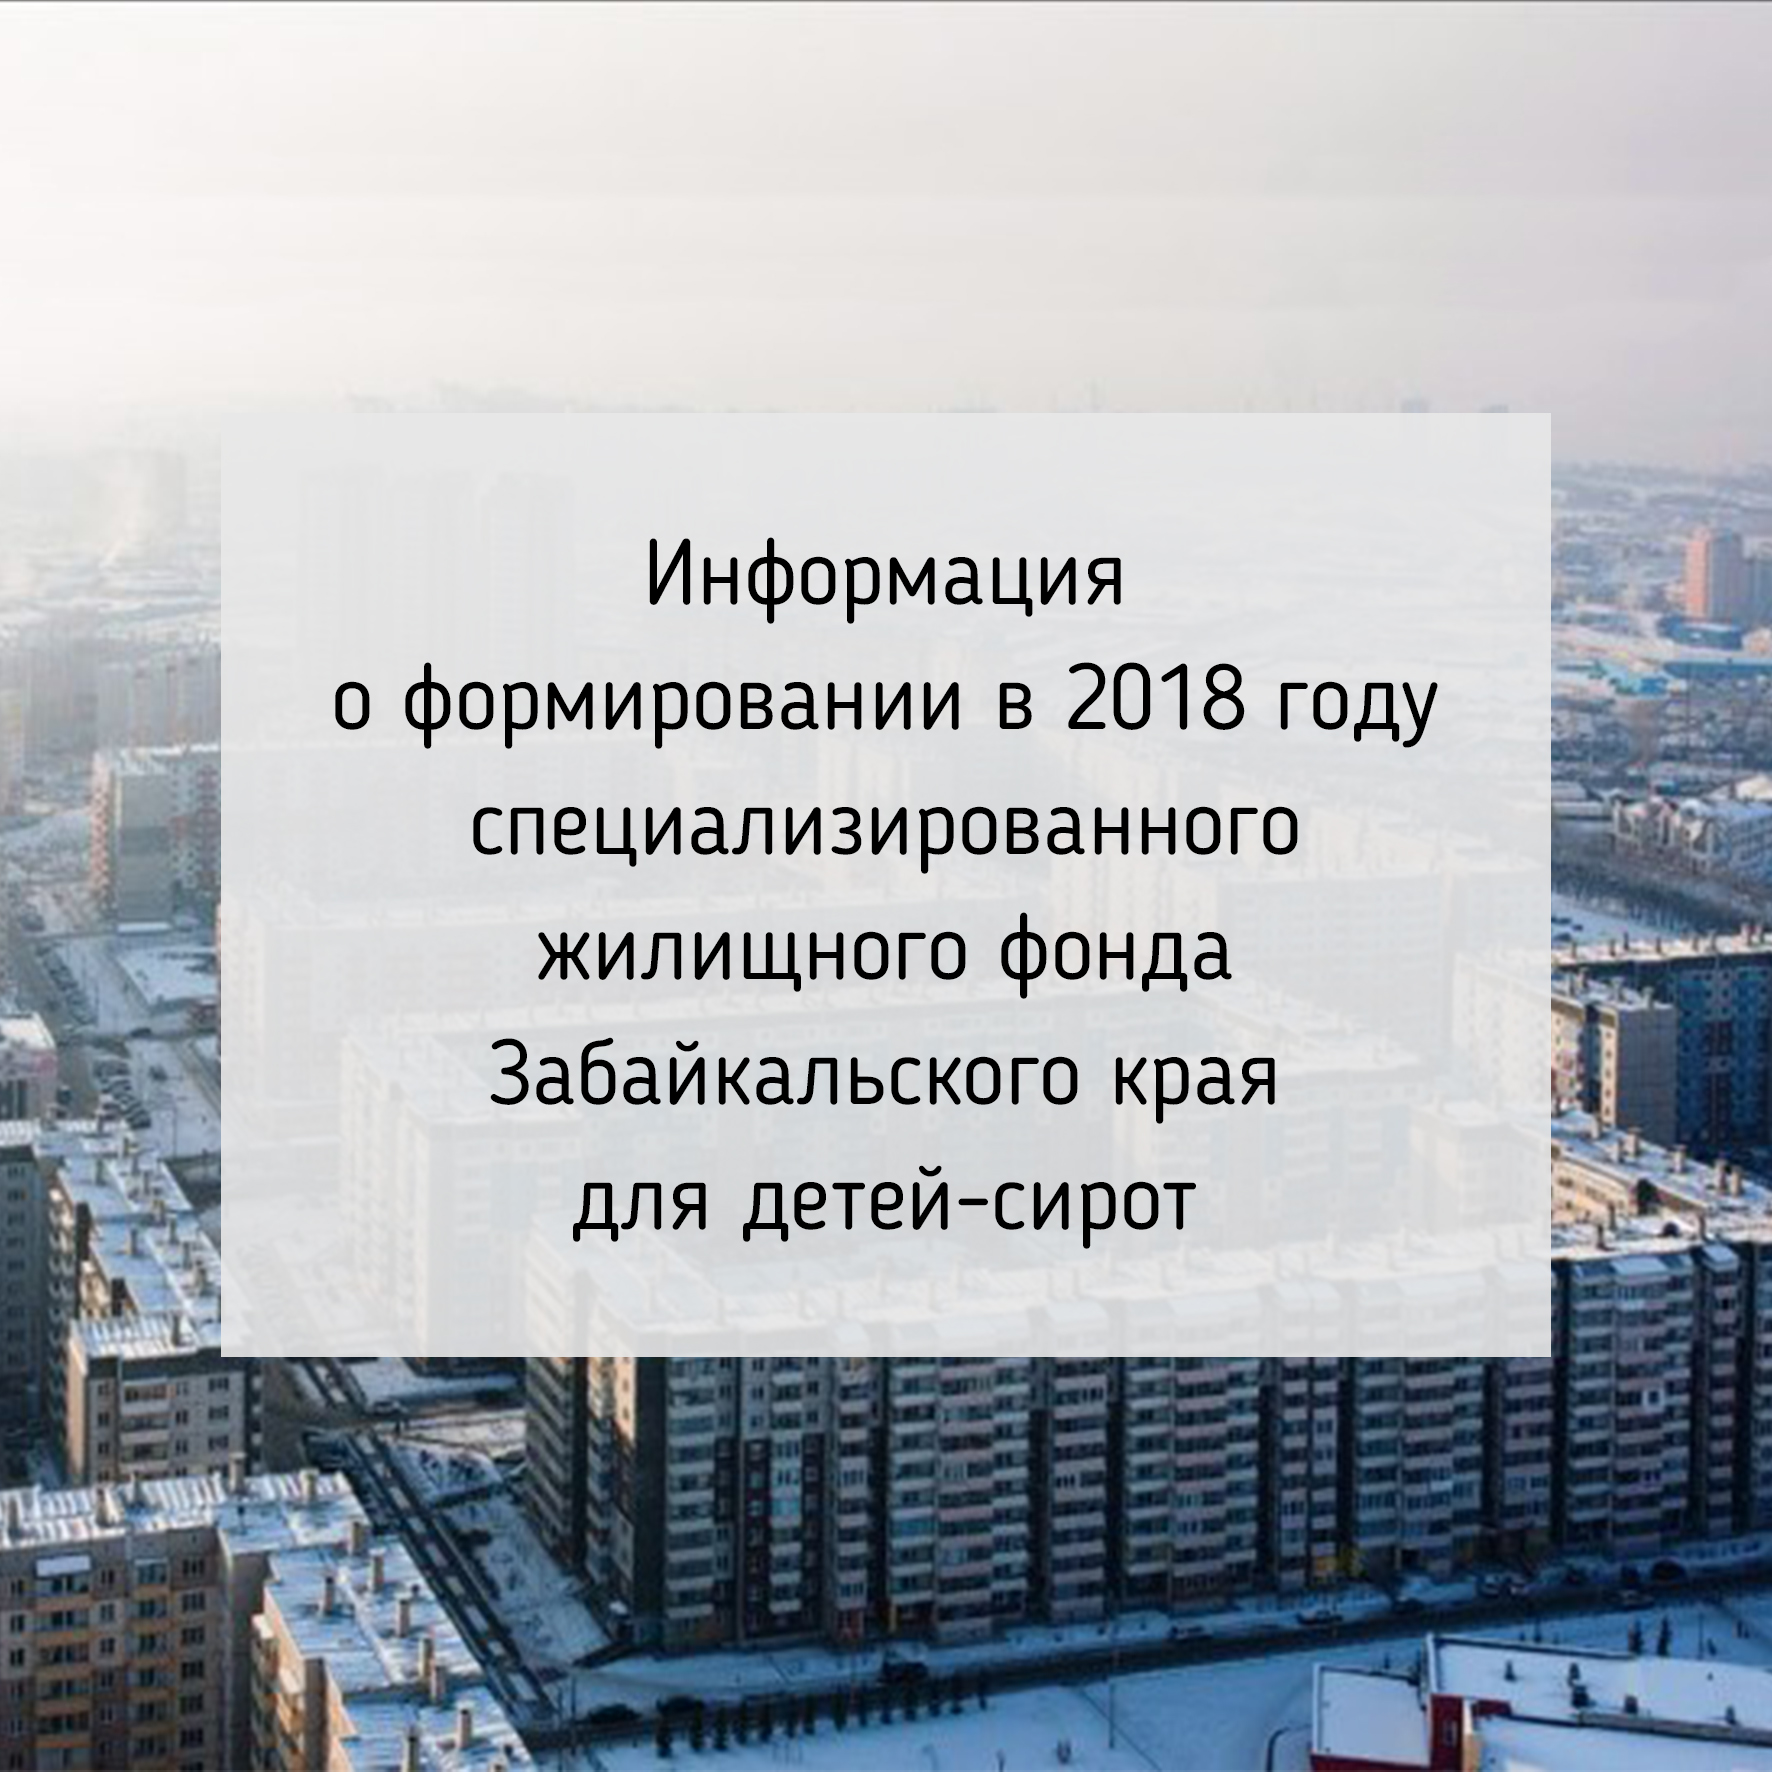 Информация о формировании в 2018 году специализированного жилищного фонда Забайкальского края для детей-сирот